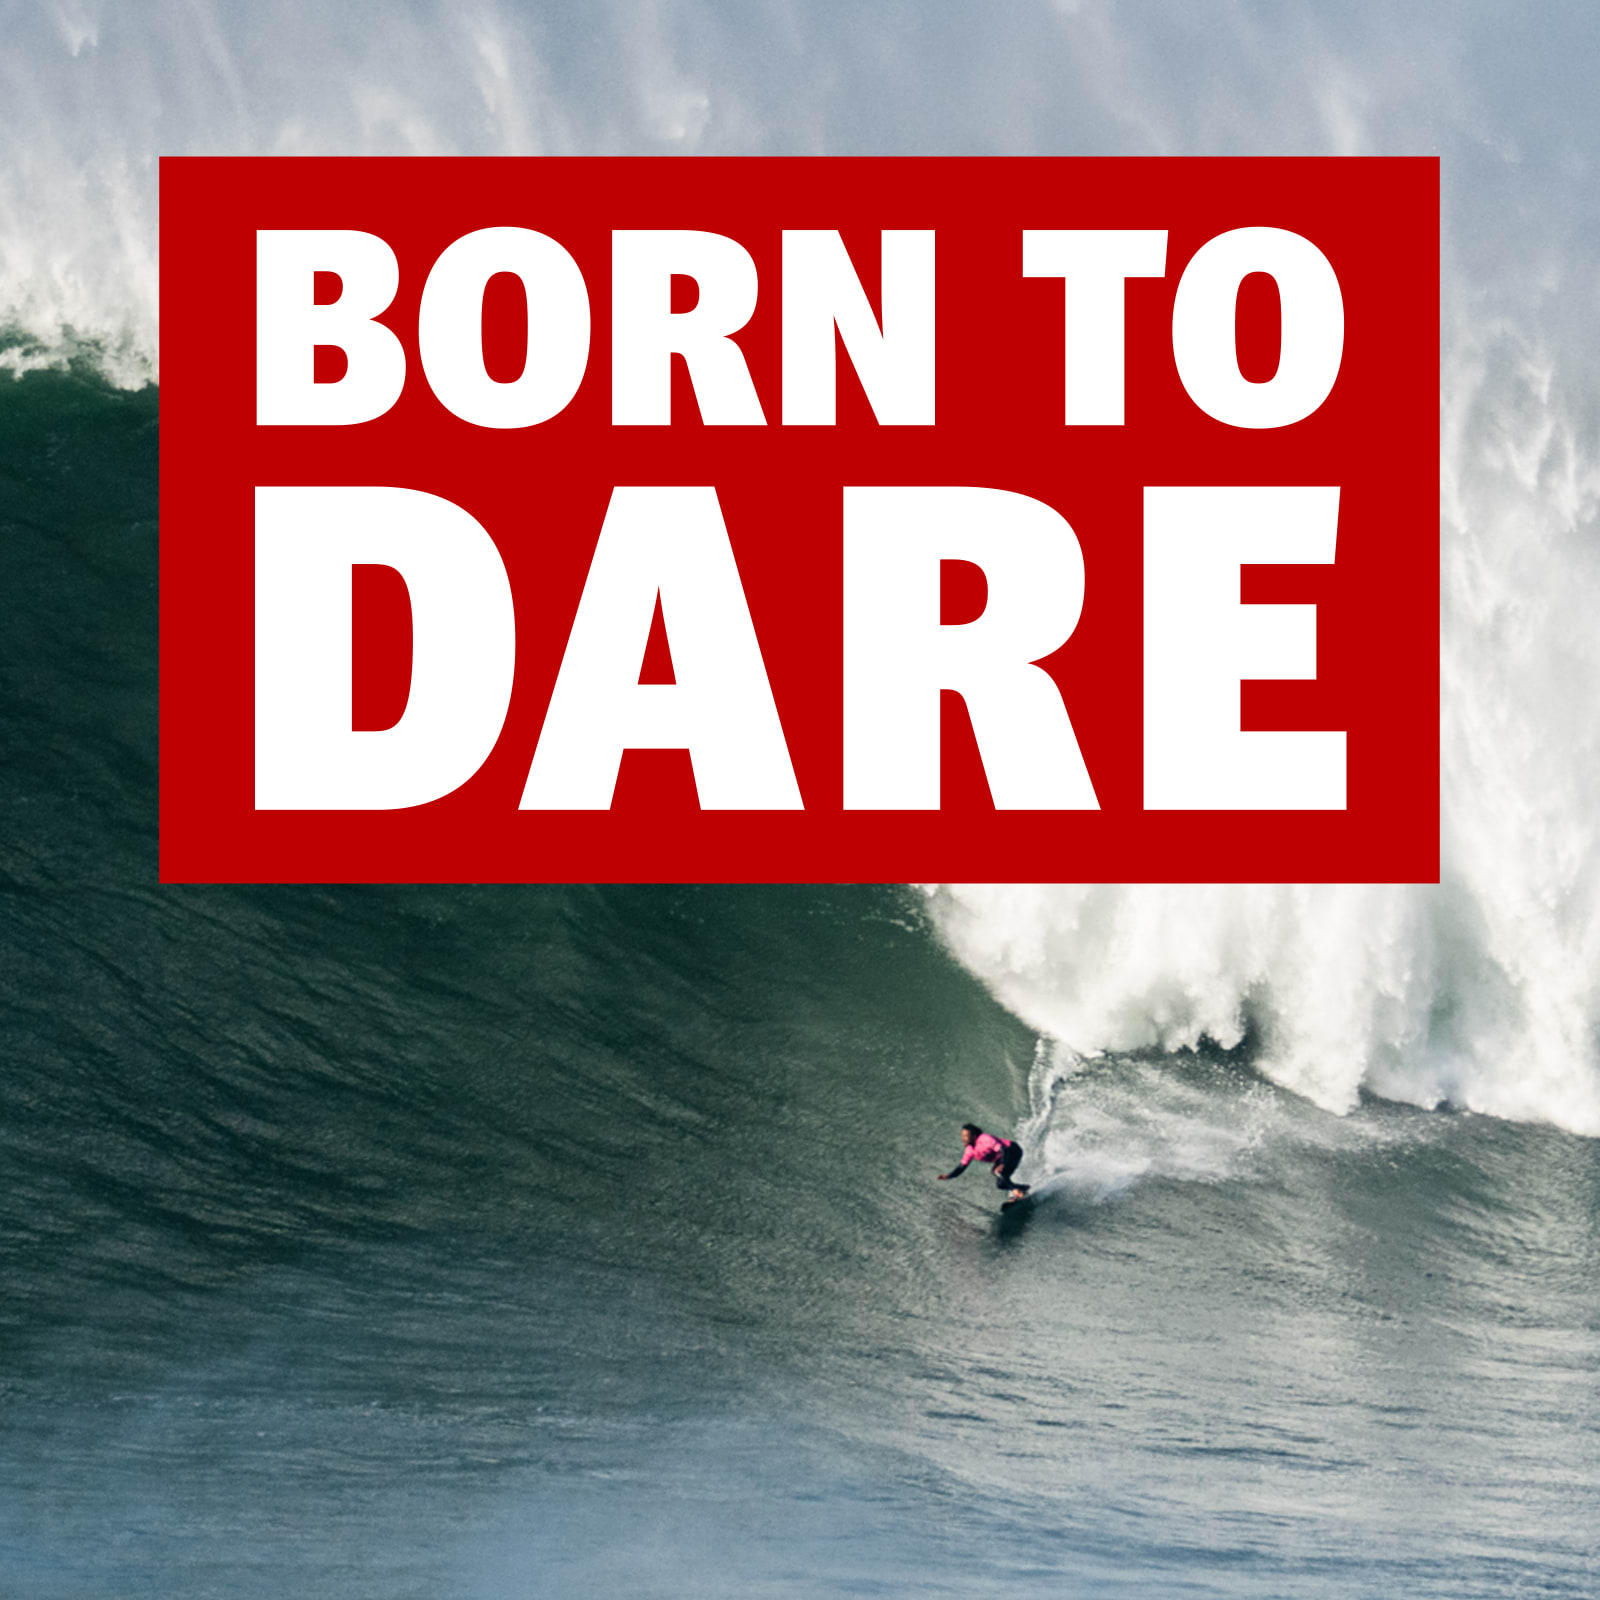 Born to dare-logo